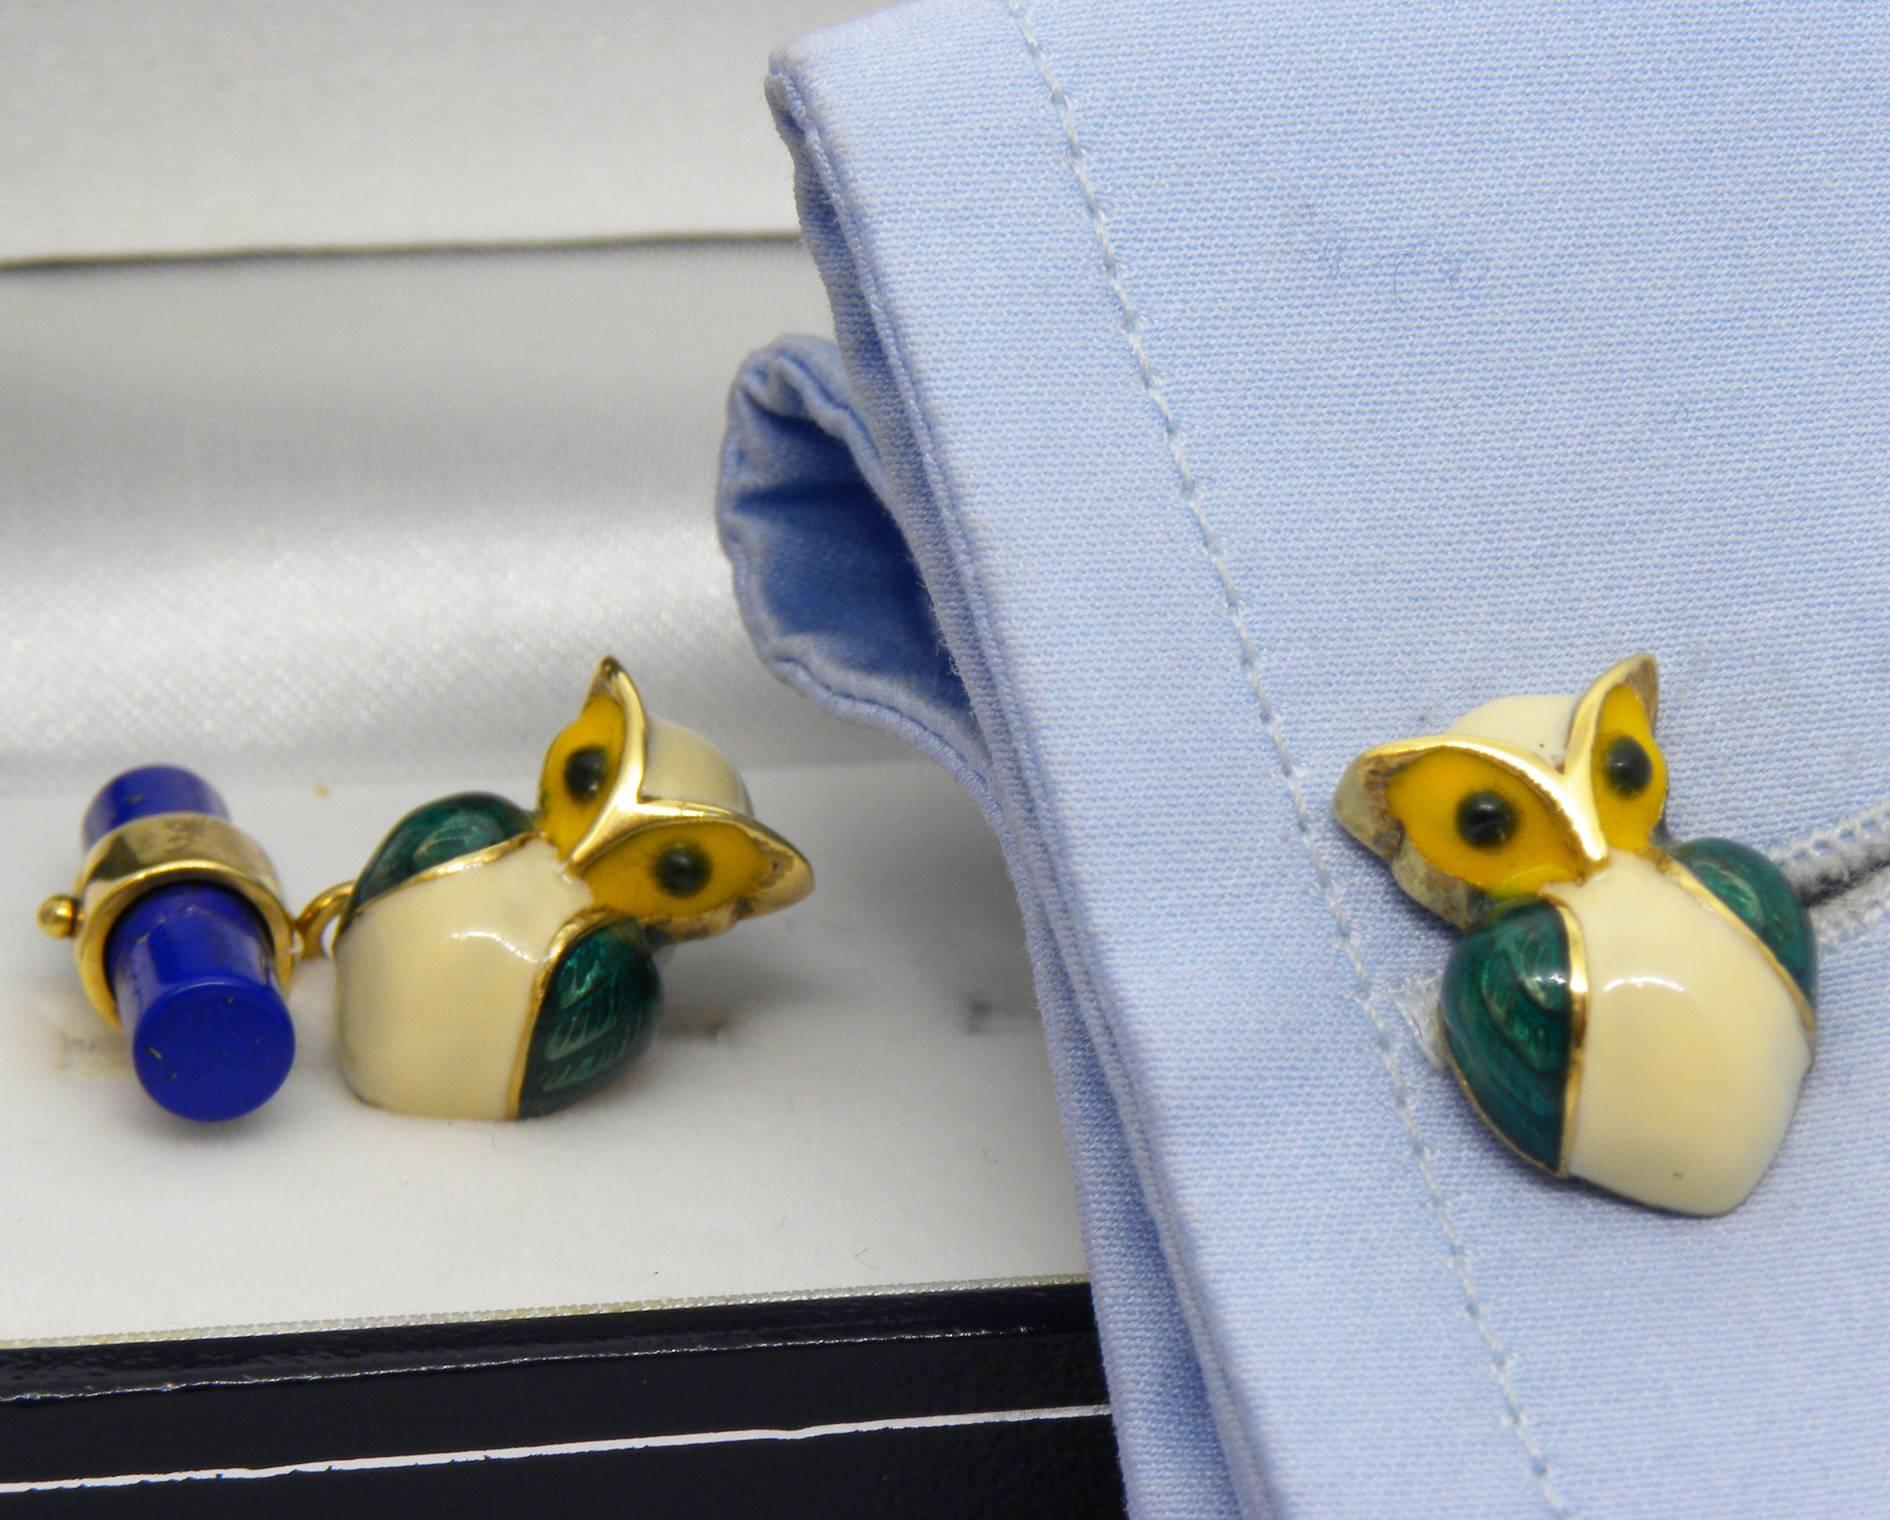 Smart hand enamelled little owl lapis lazuli stick back cufflinks, 10g 18Carat yellow gold
Owl size 16x11mm
